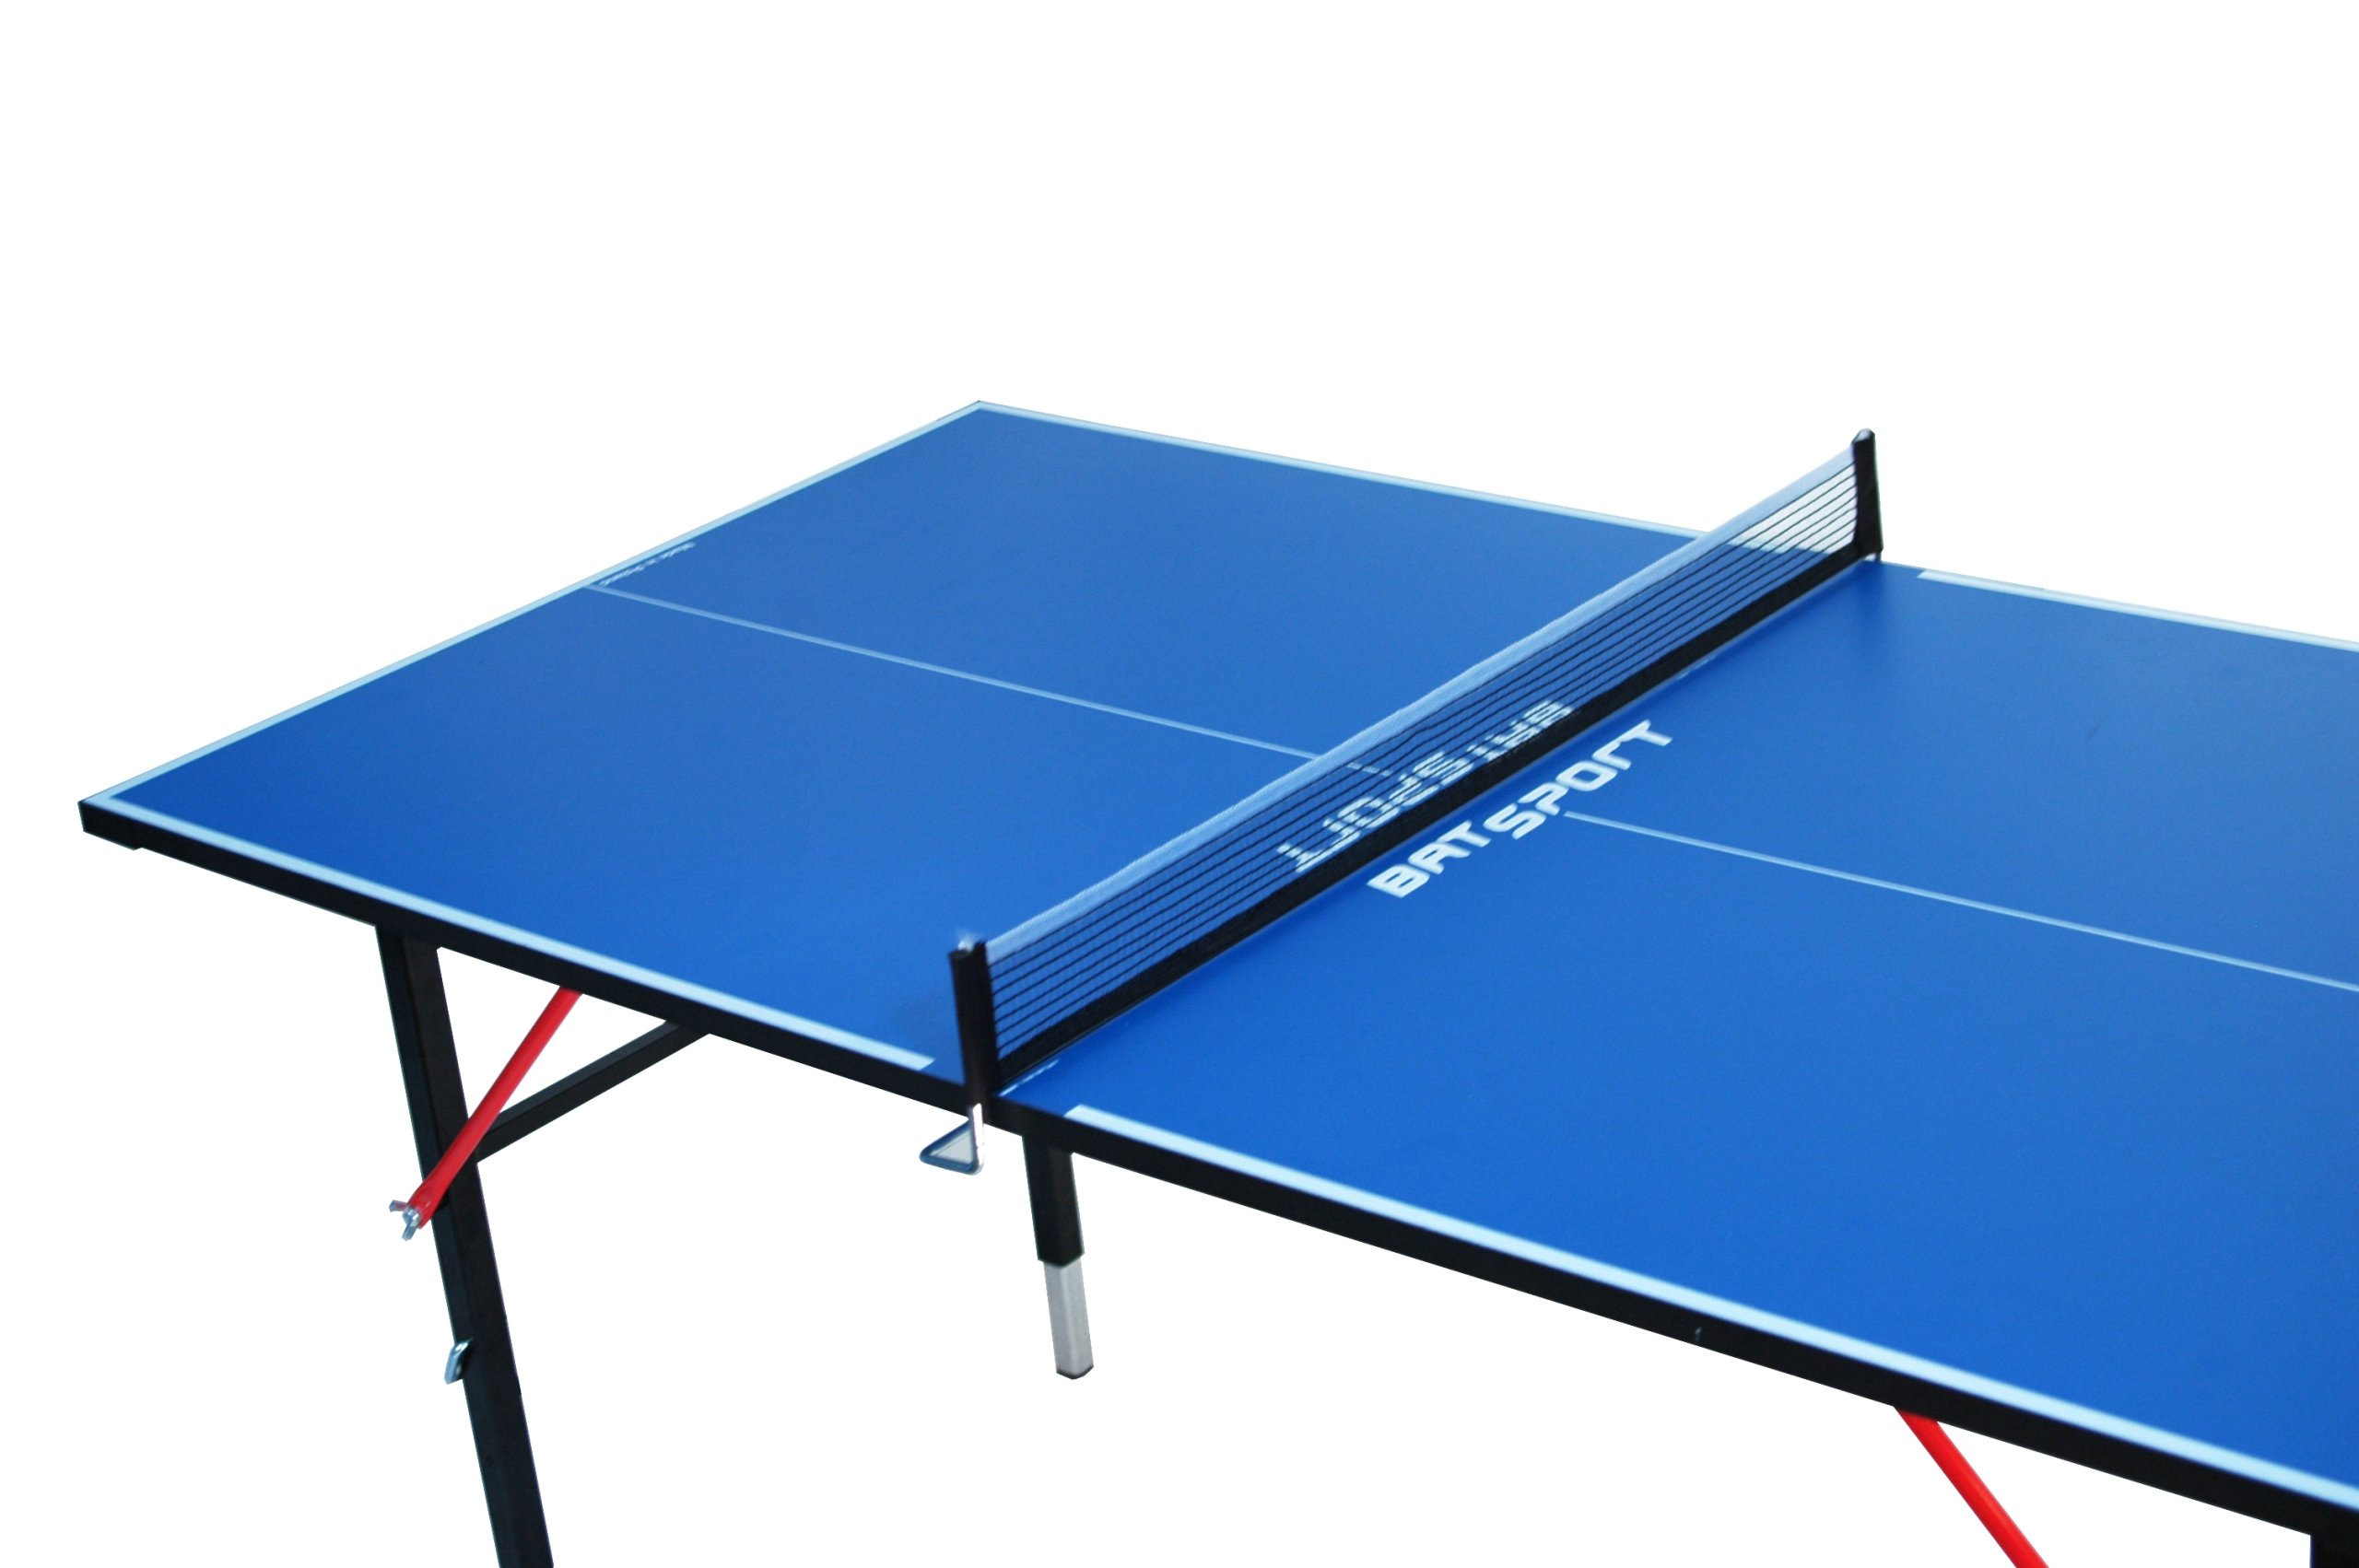 размеры стола для настольного тенниса длина ширина высота